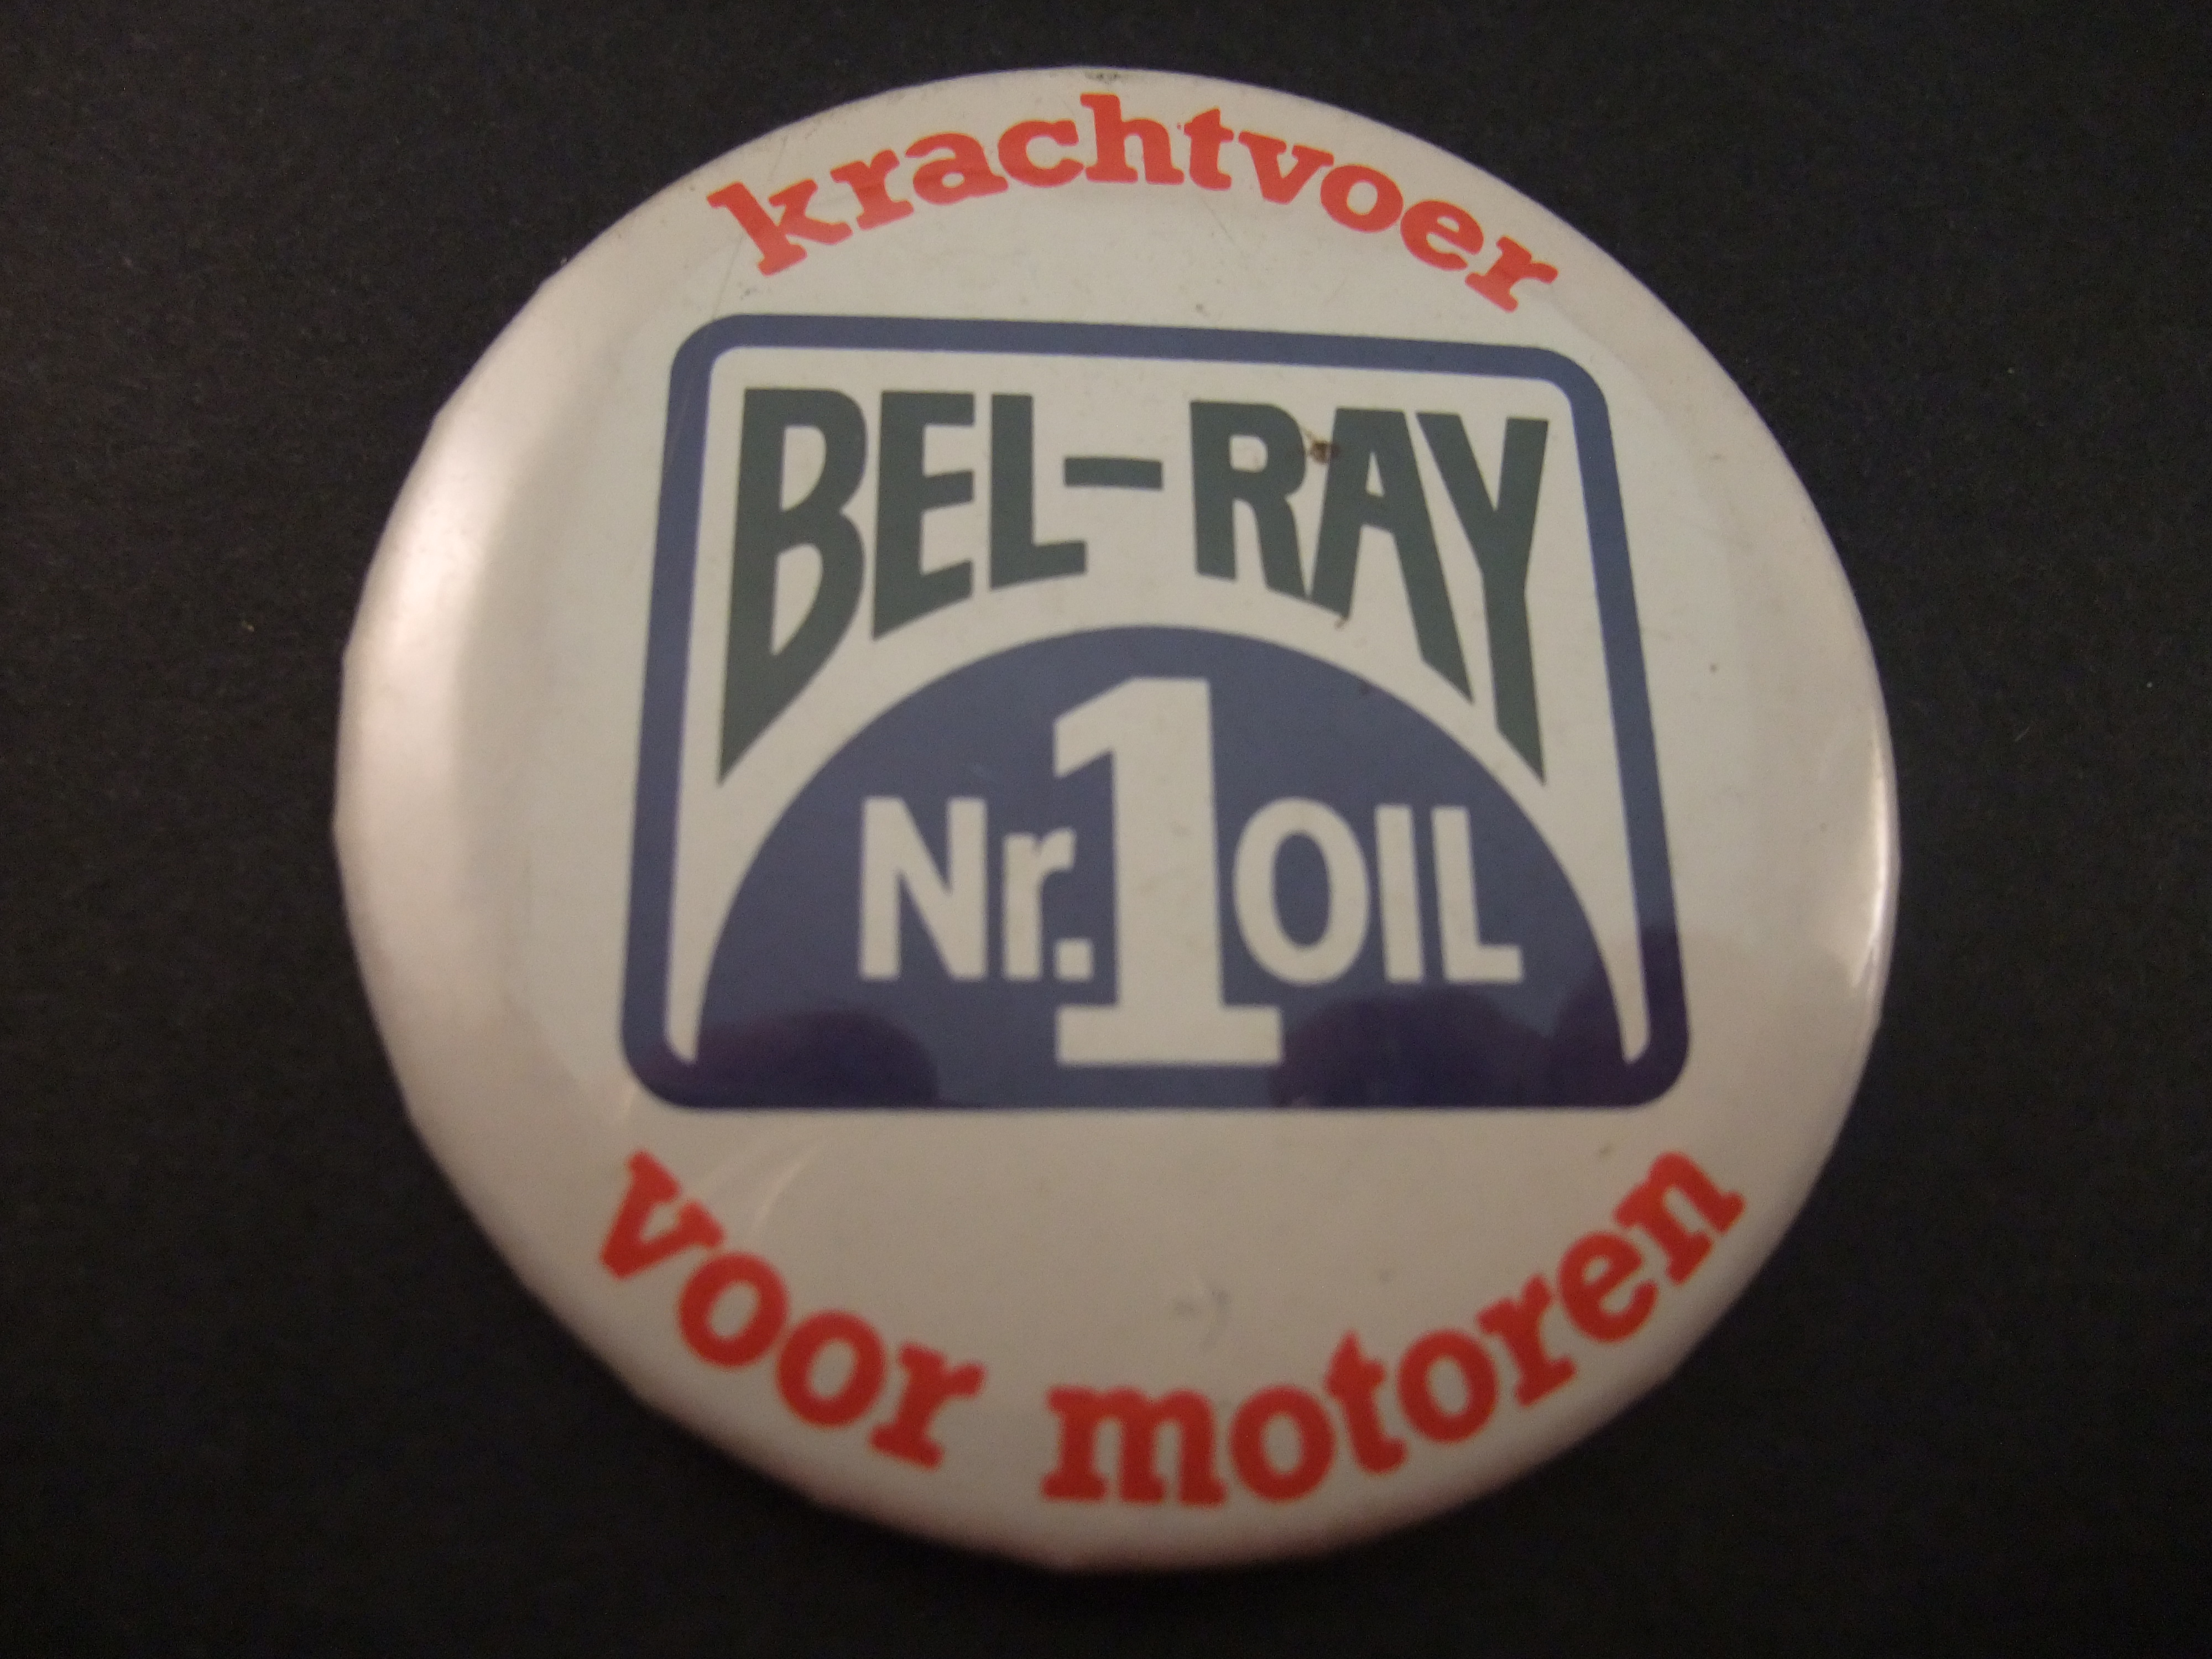 Bel-Ray motor oil voor motoren